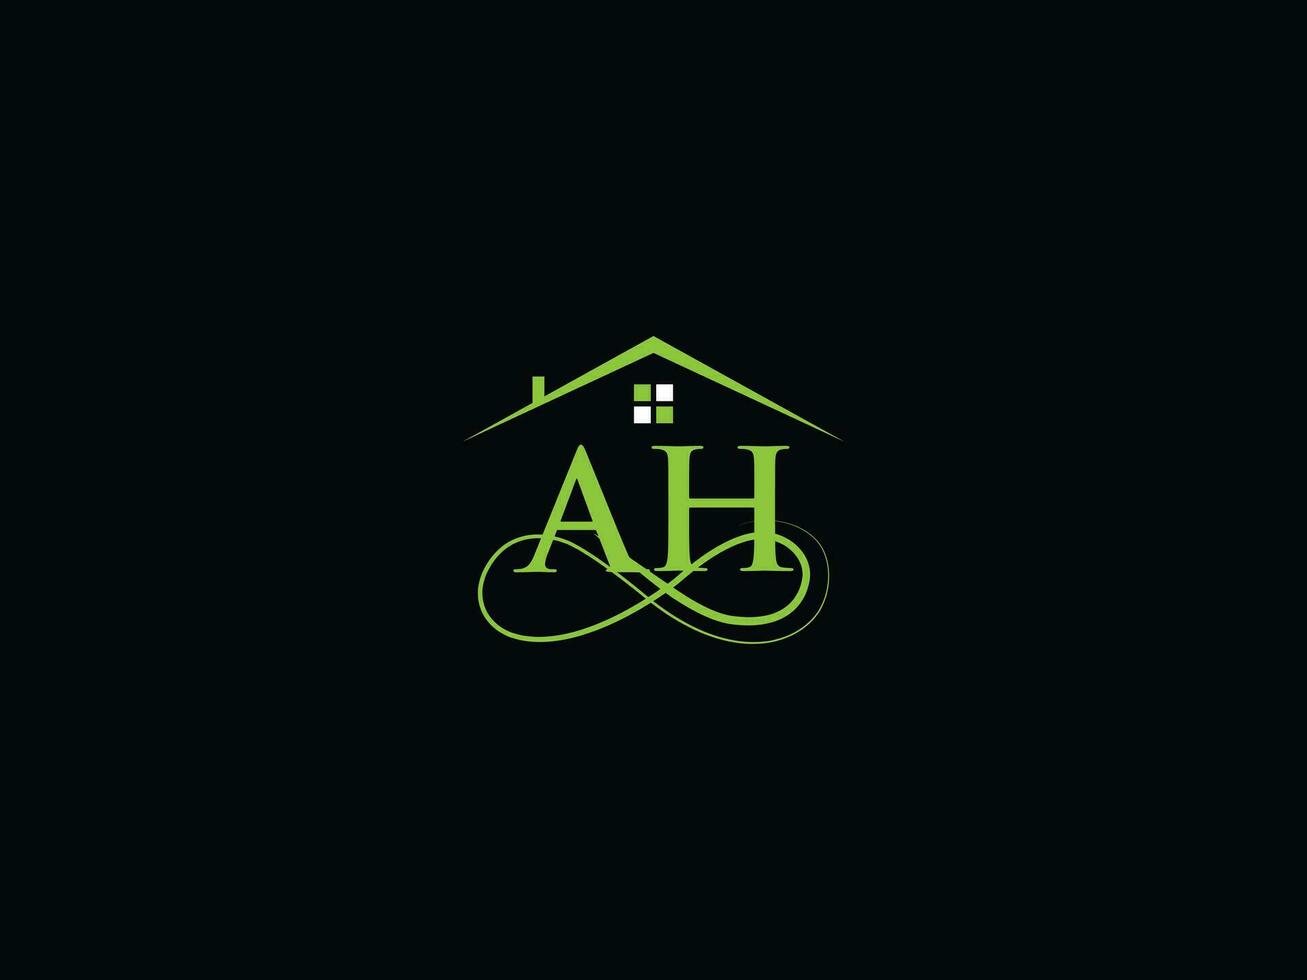 abstrait ah logo lettre, bâtiment ah luxe réel biens logo pour affaires vecteur